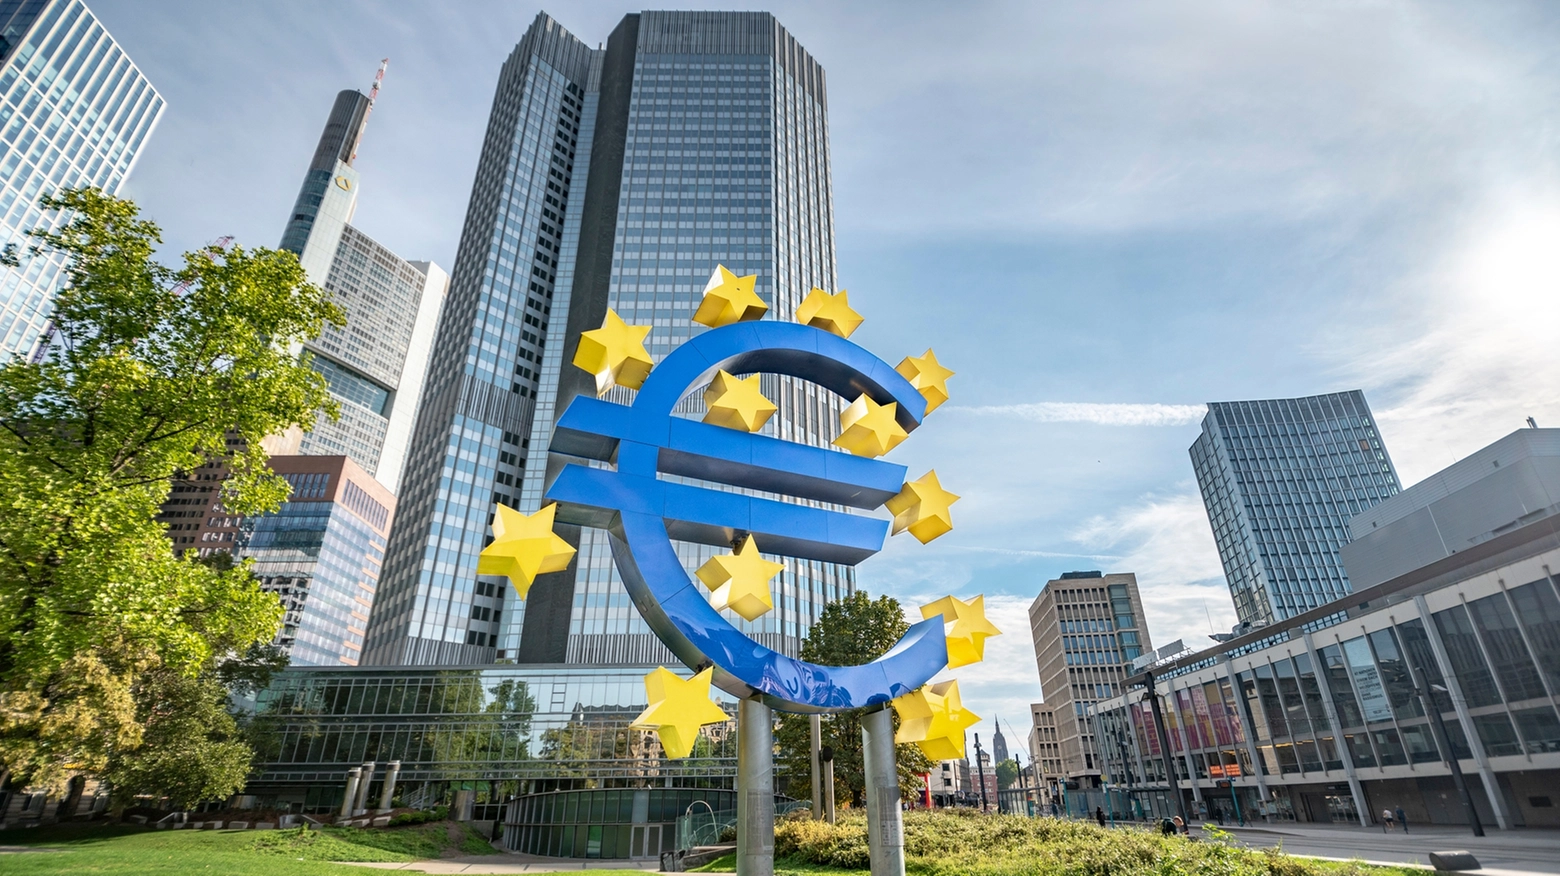 I cambi dell'assetto operativo della Bce - Crediti: iStock